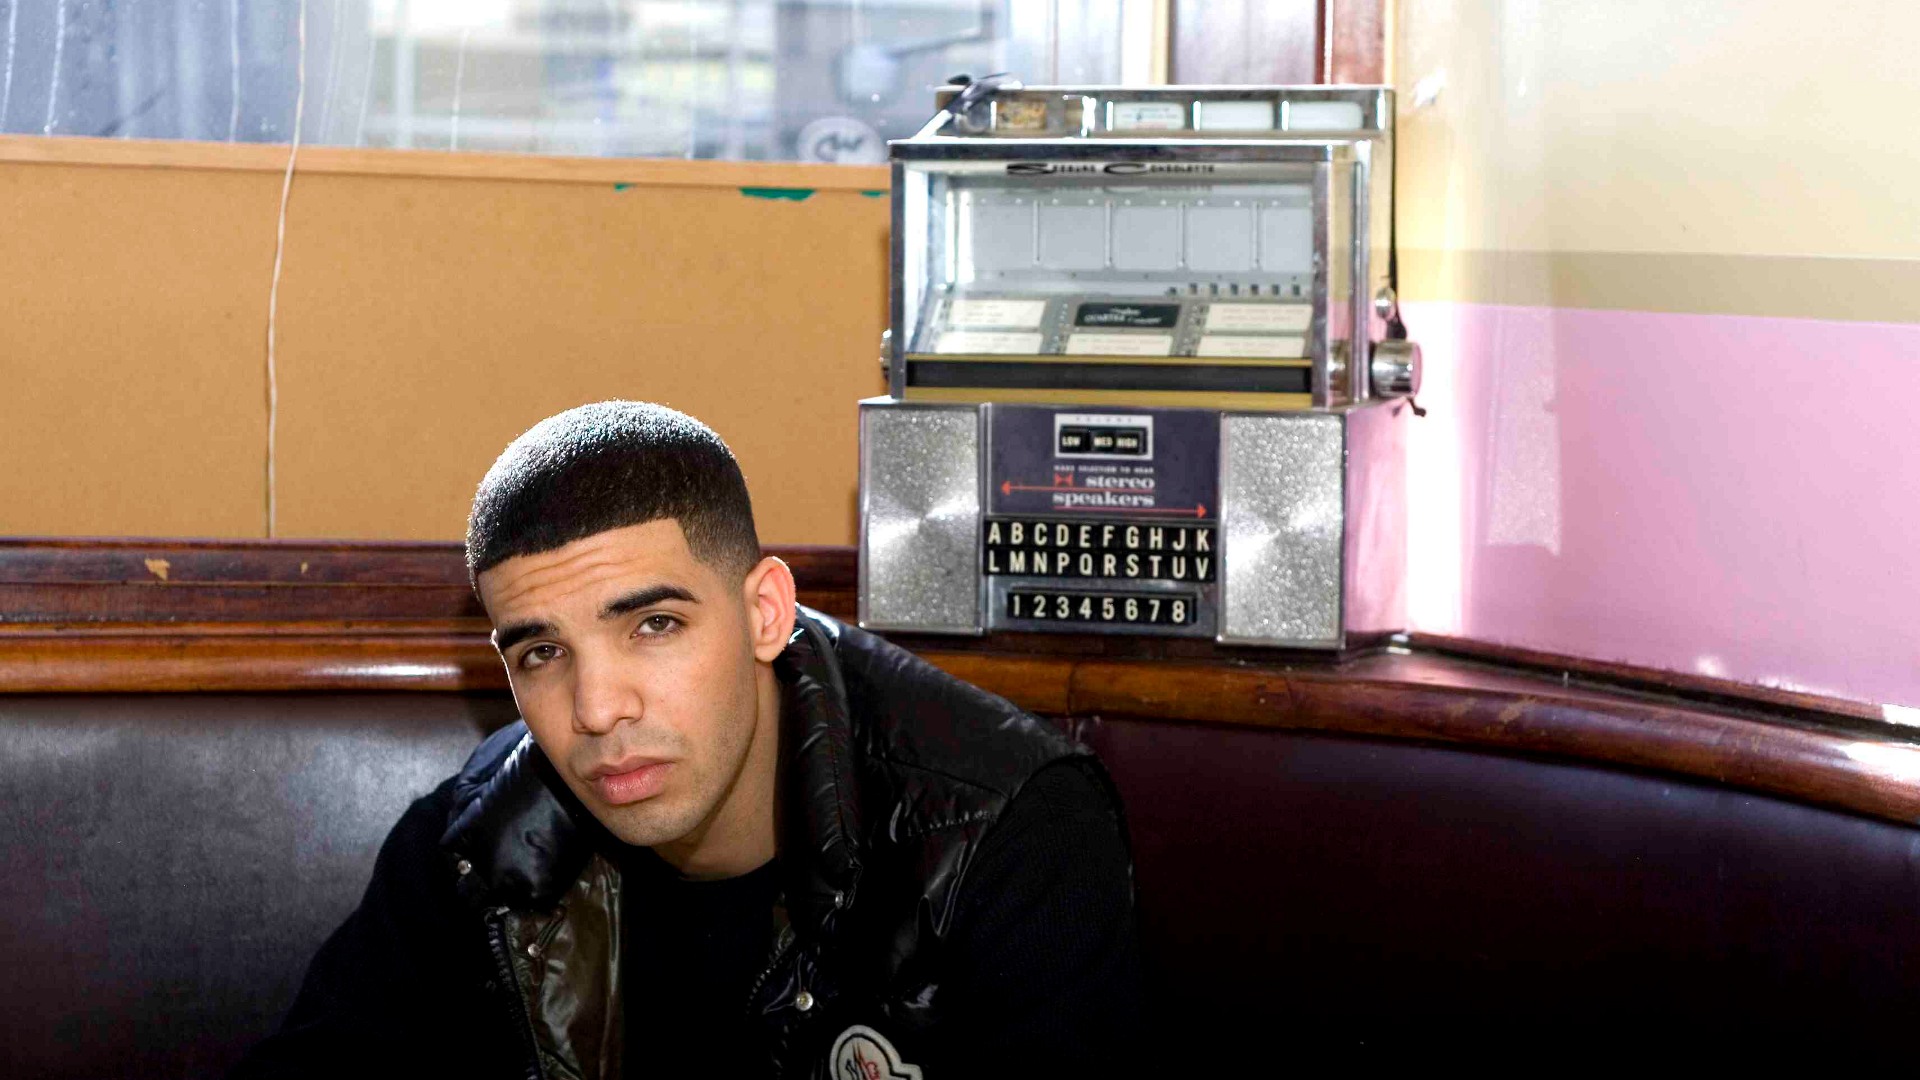 Melhores papéis de parede de Drake para tela do telefone